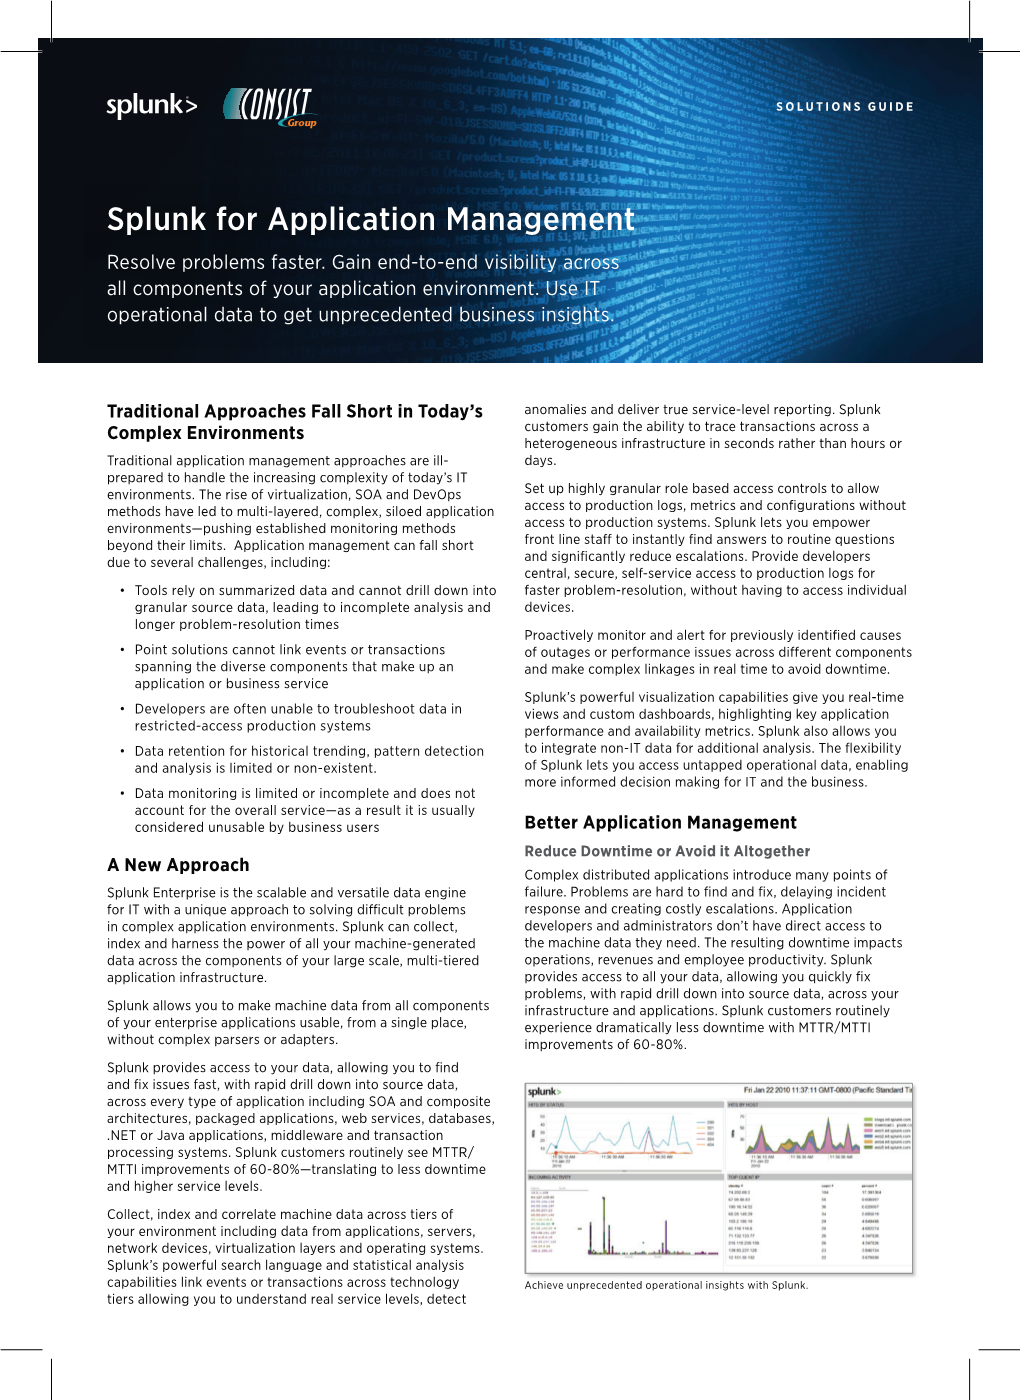 Splunk for Application Management Resolve Problems Faster